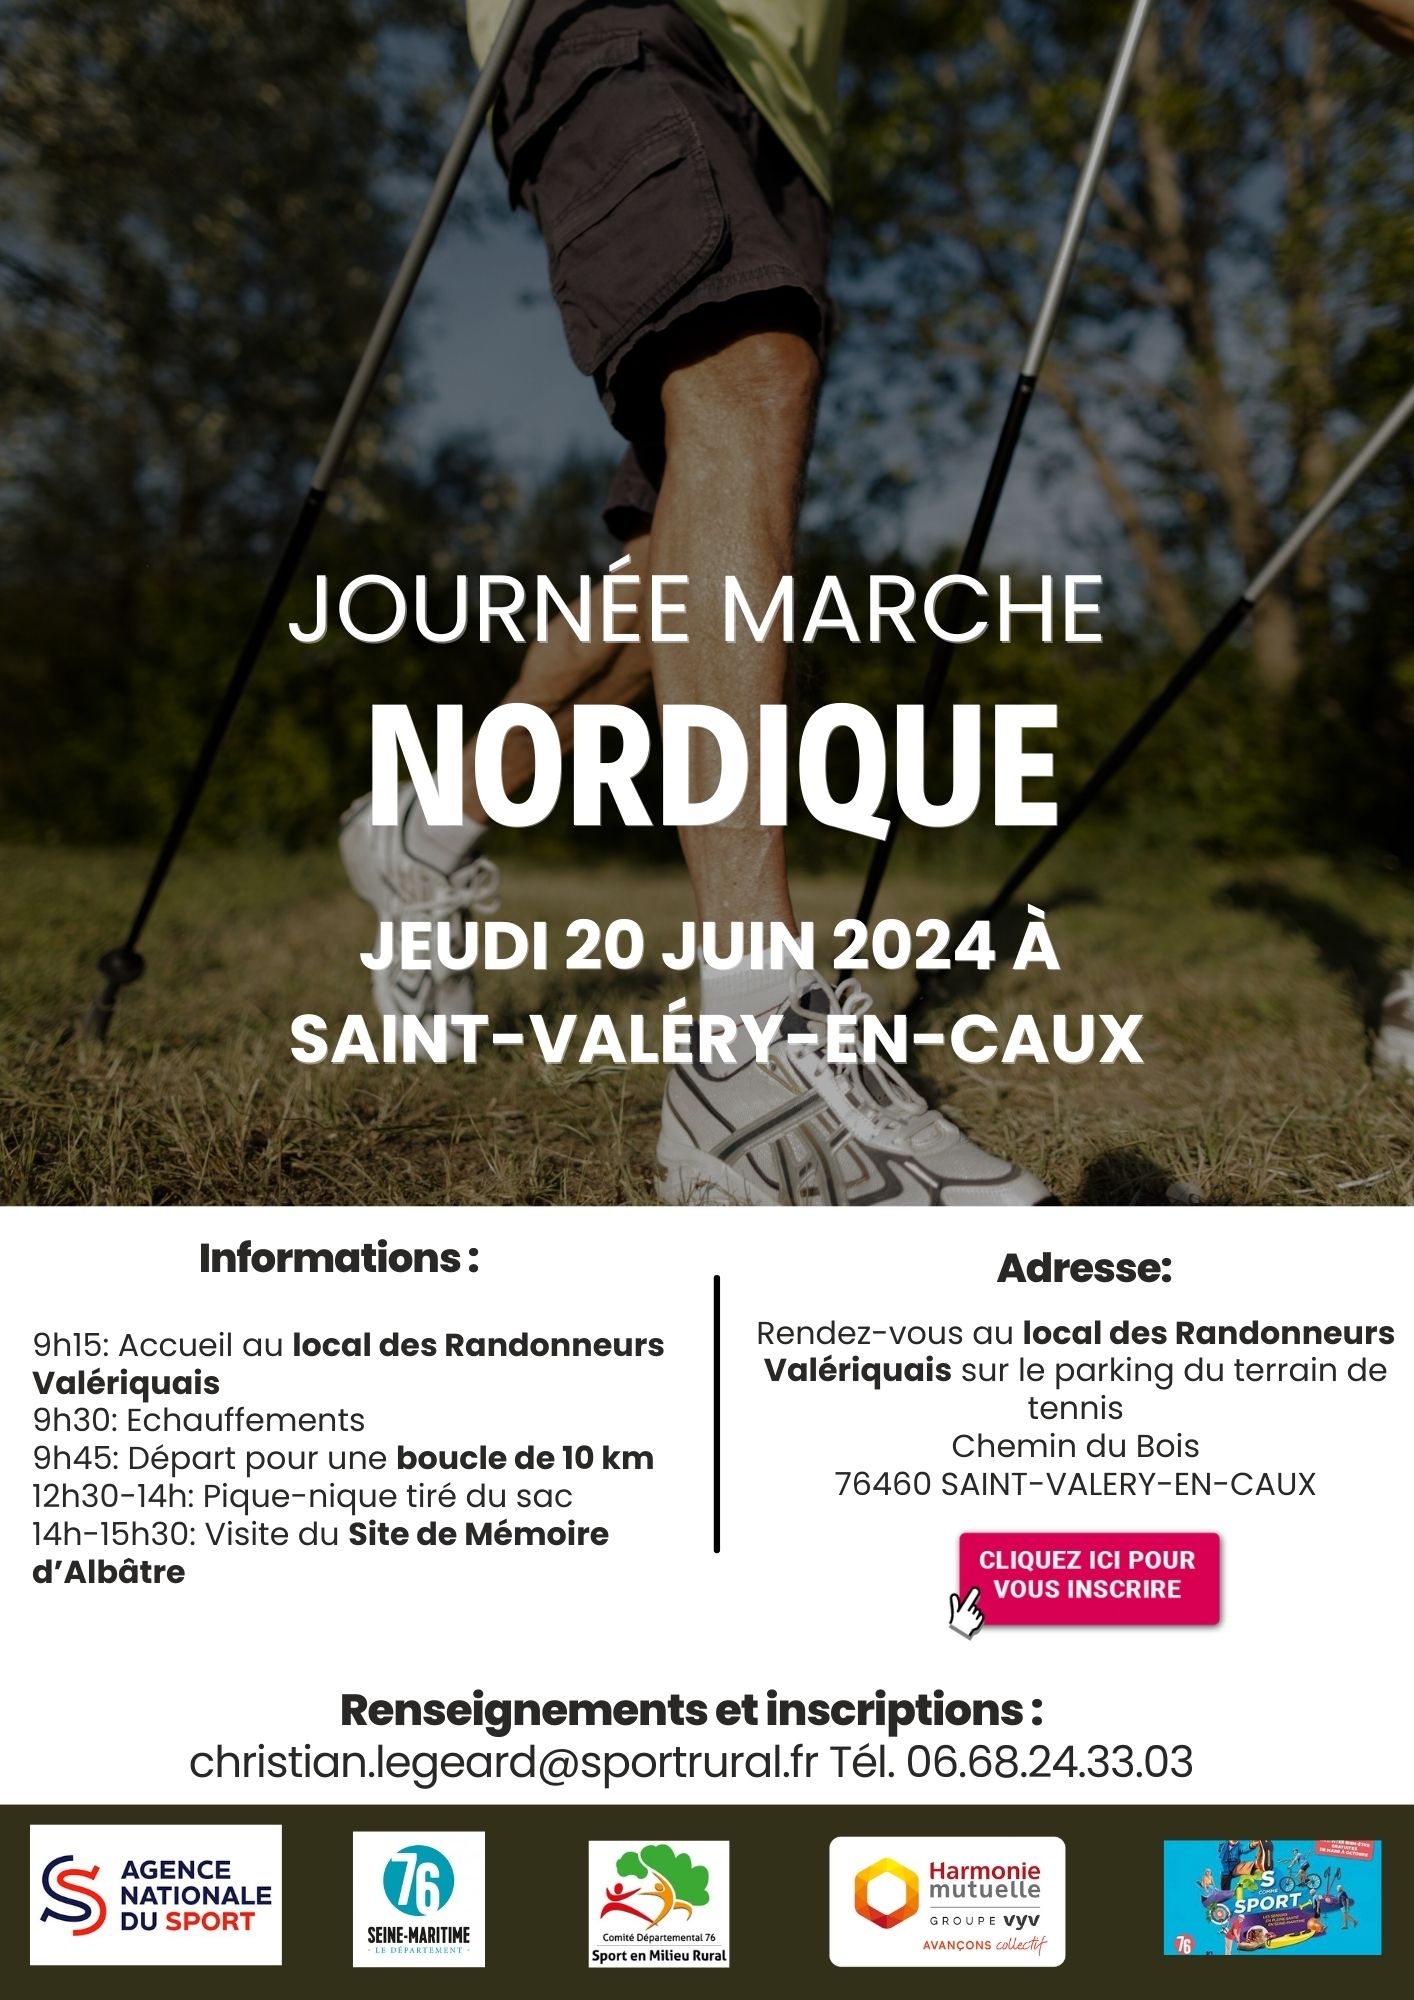 Journée marche nordique à Saint-Valéry-en-Caux le 20 juin 2024